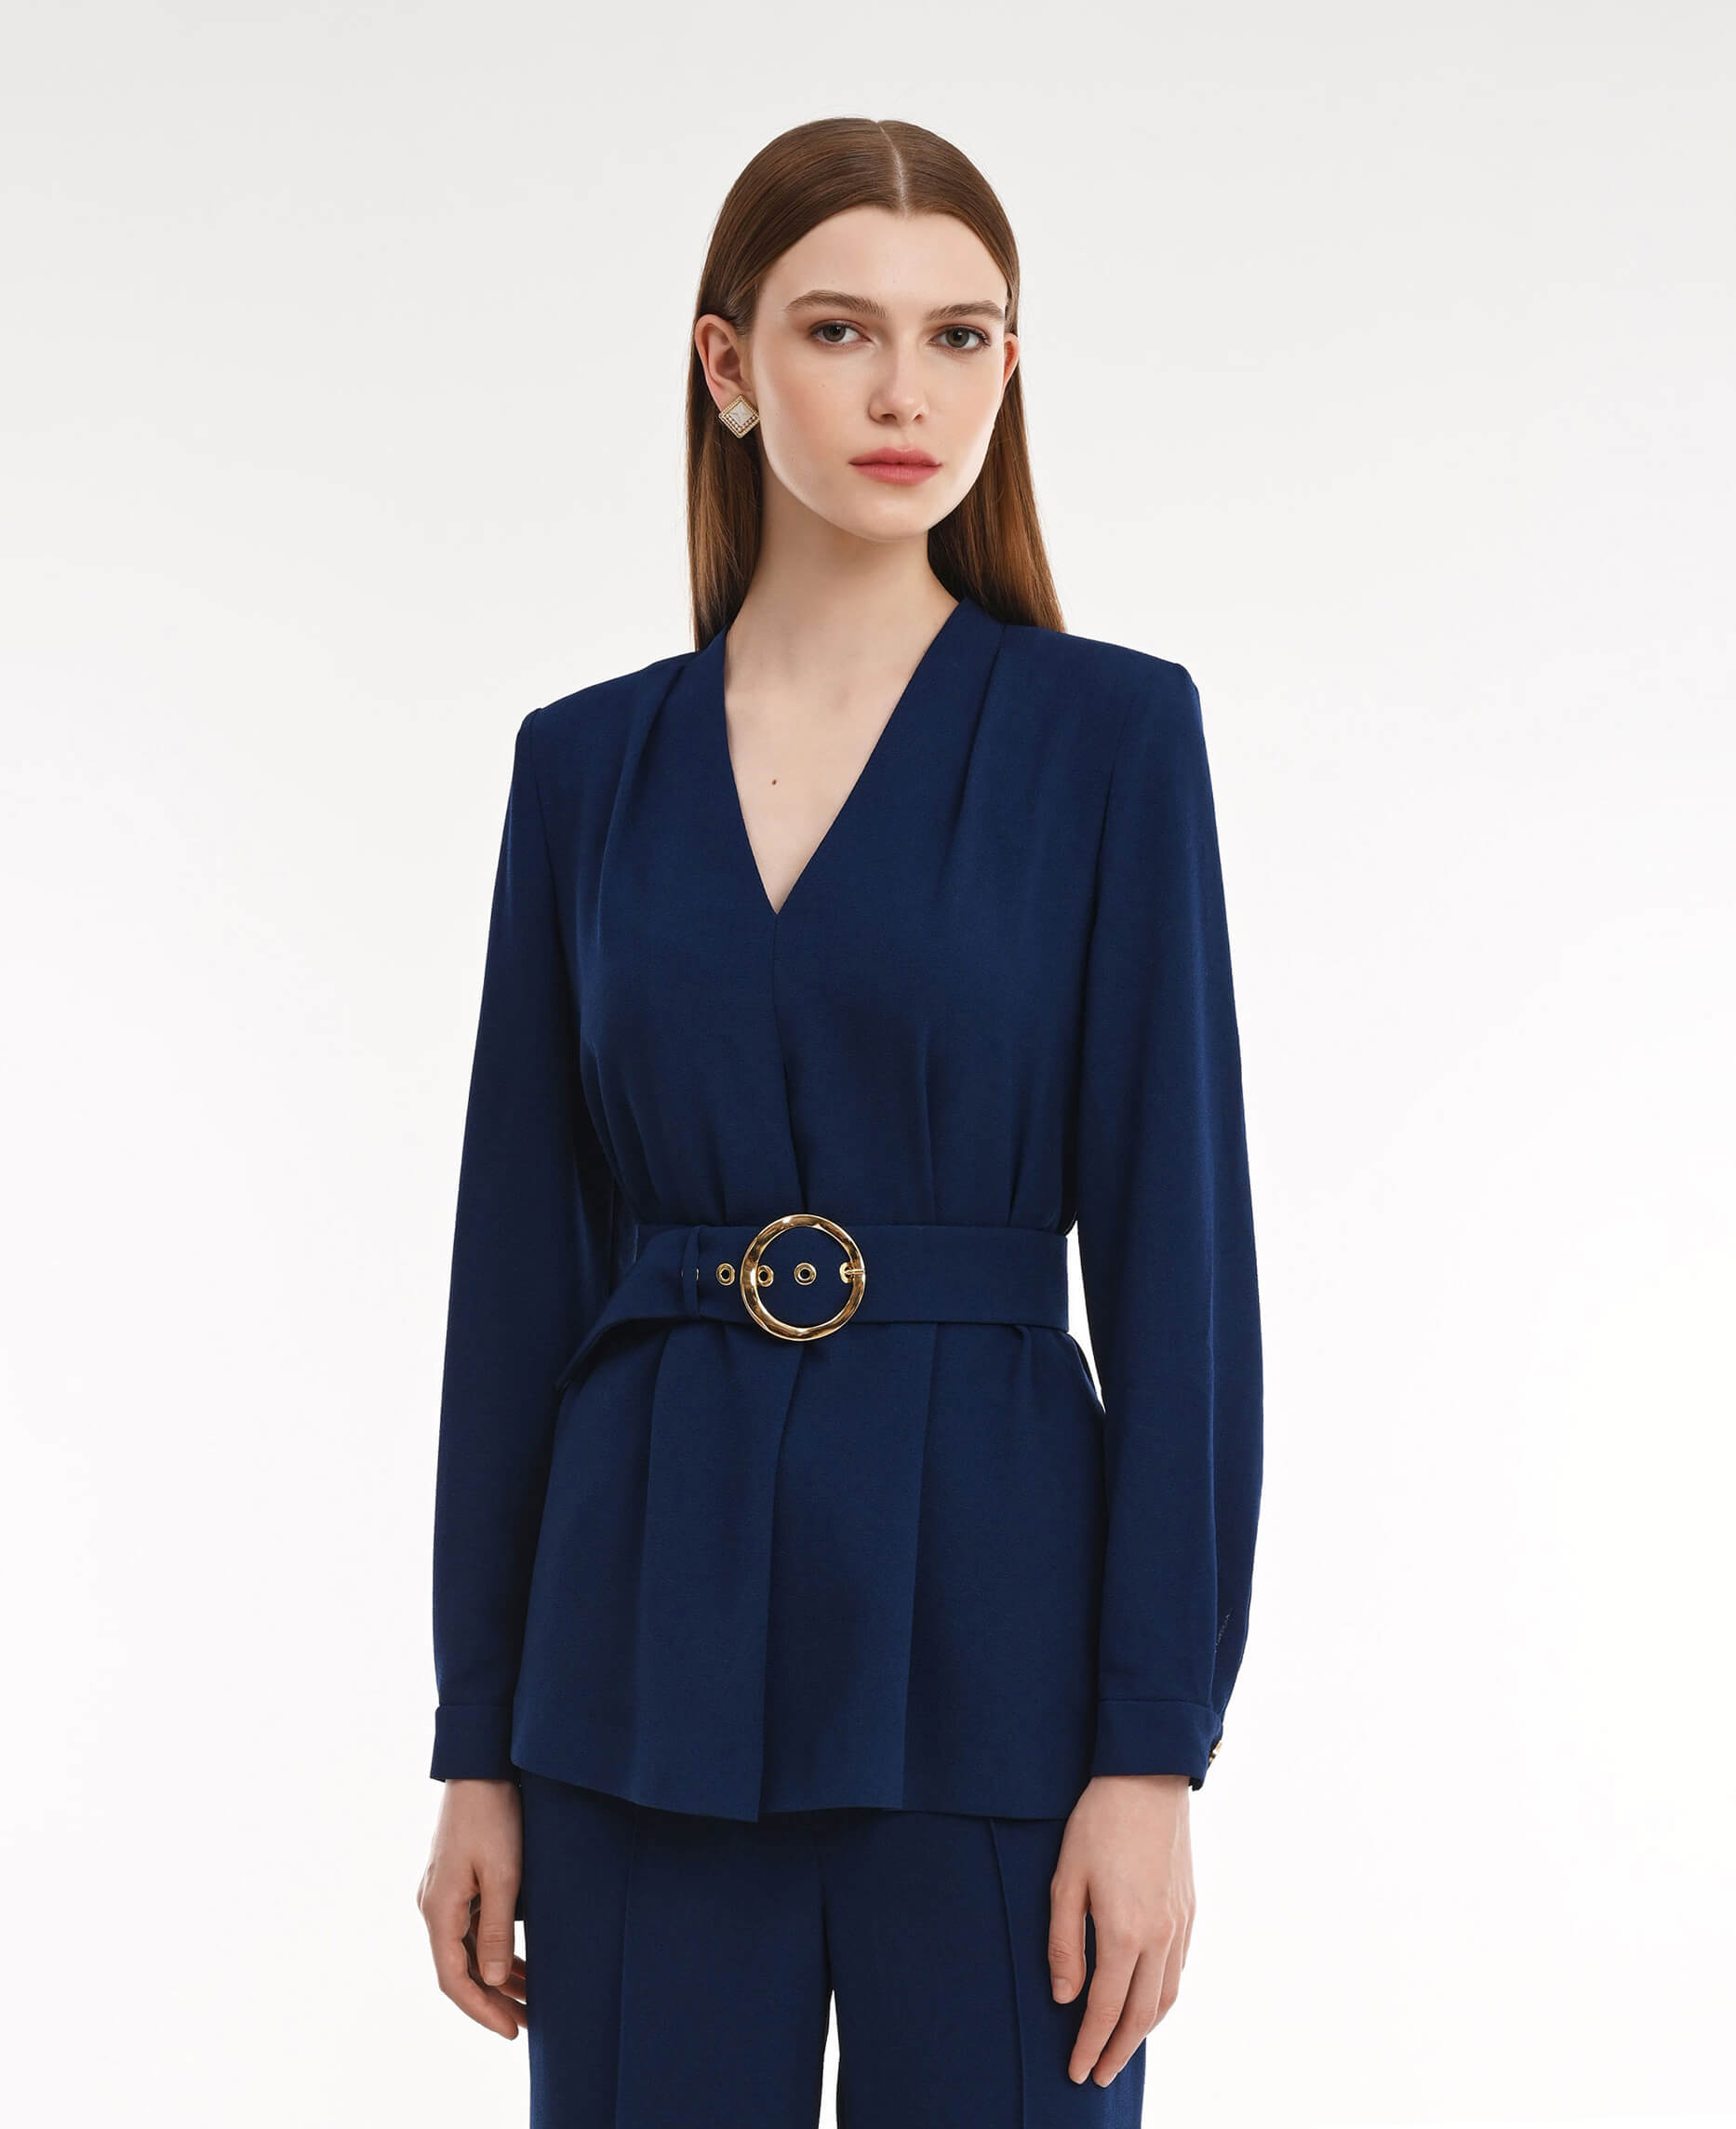 Блузка с V-образным вырезом Цвет Синий